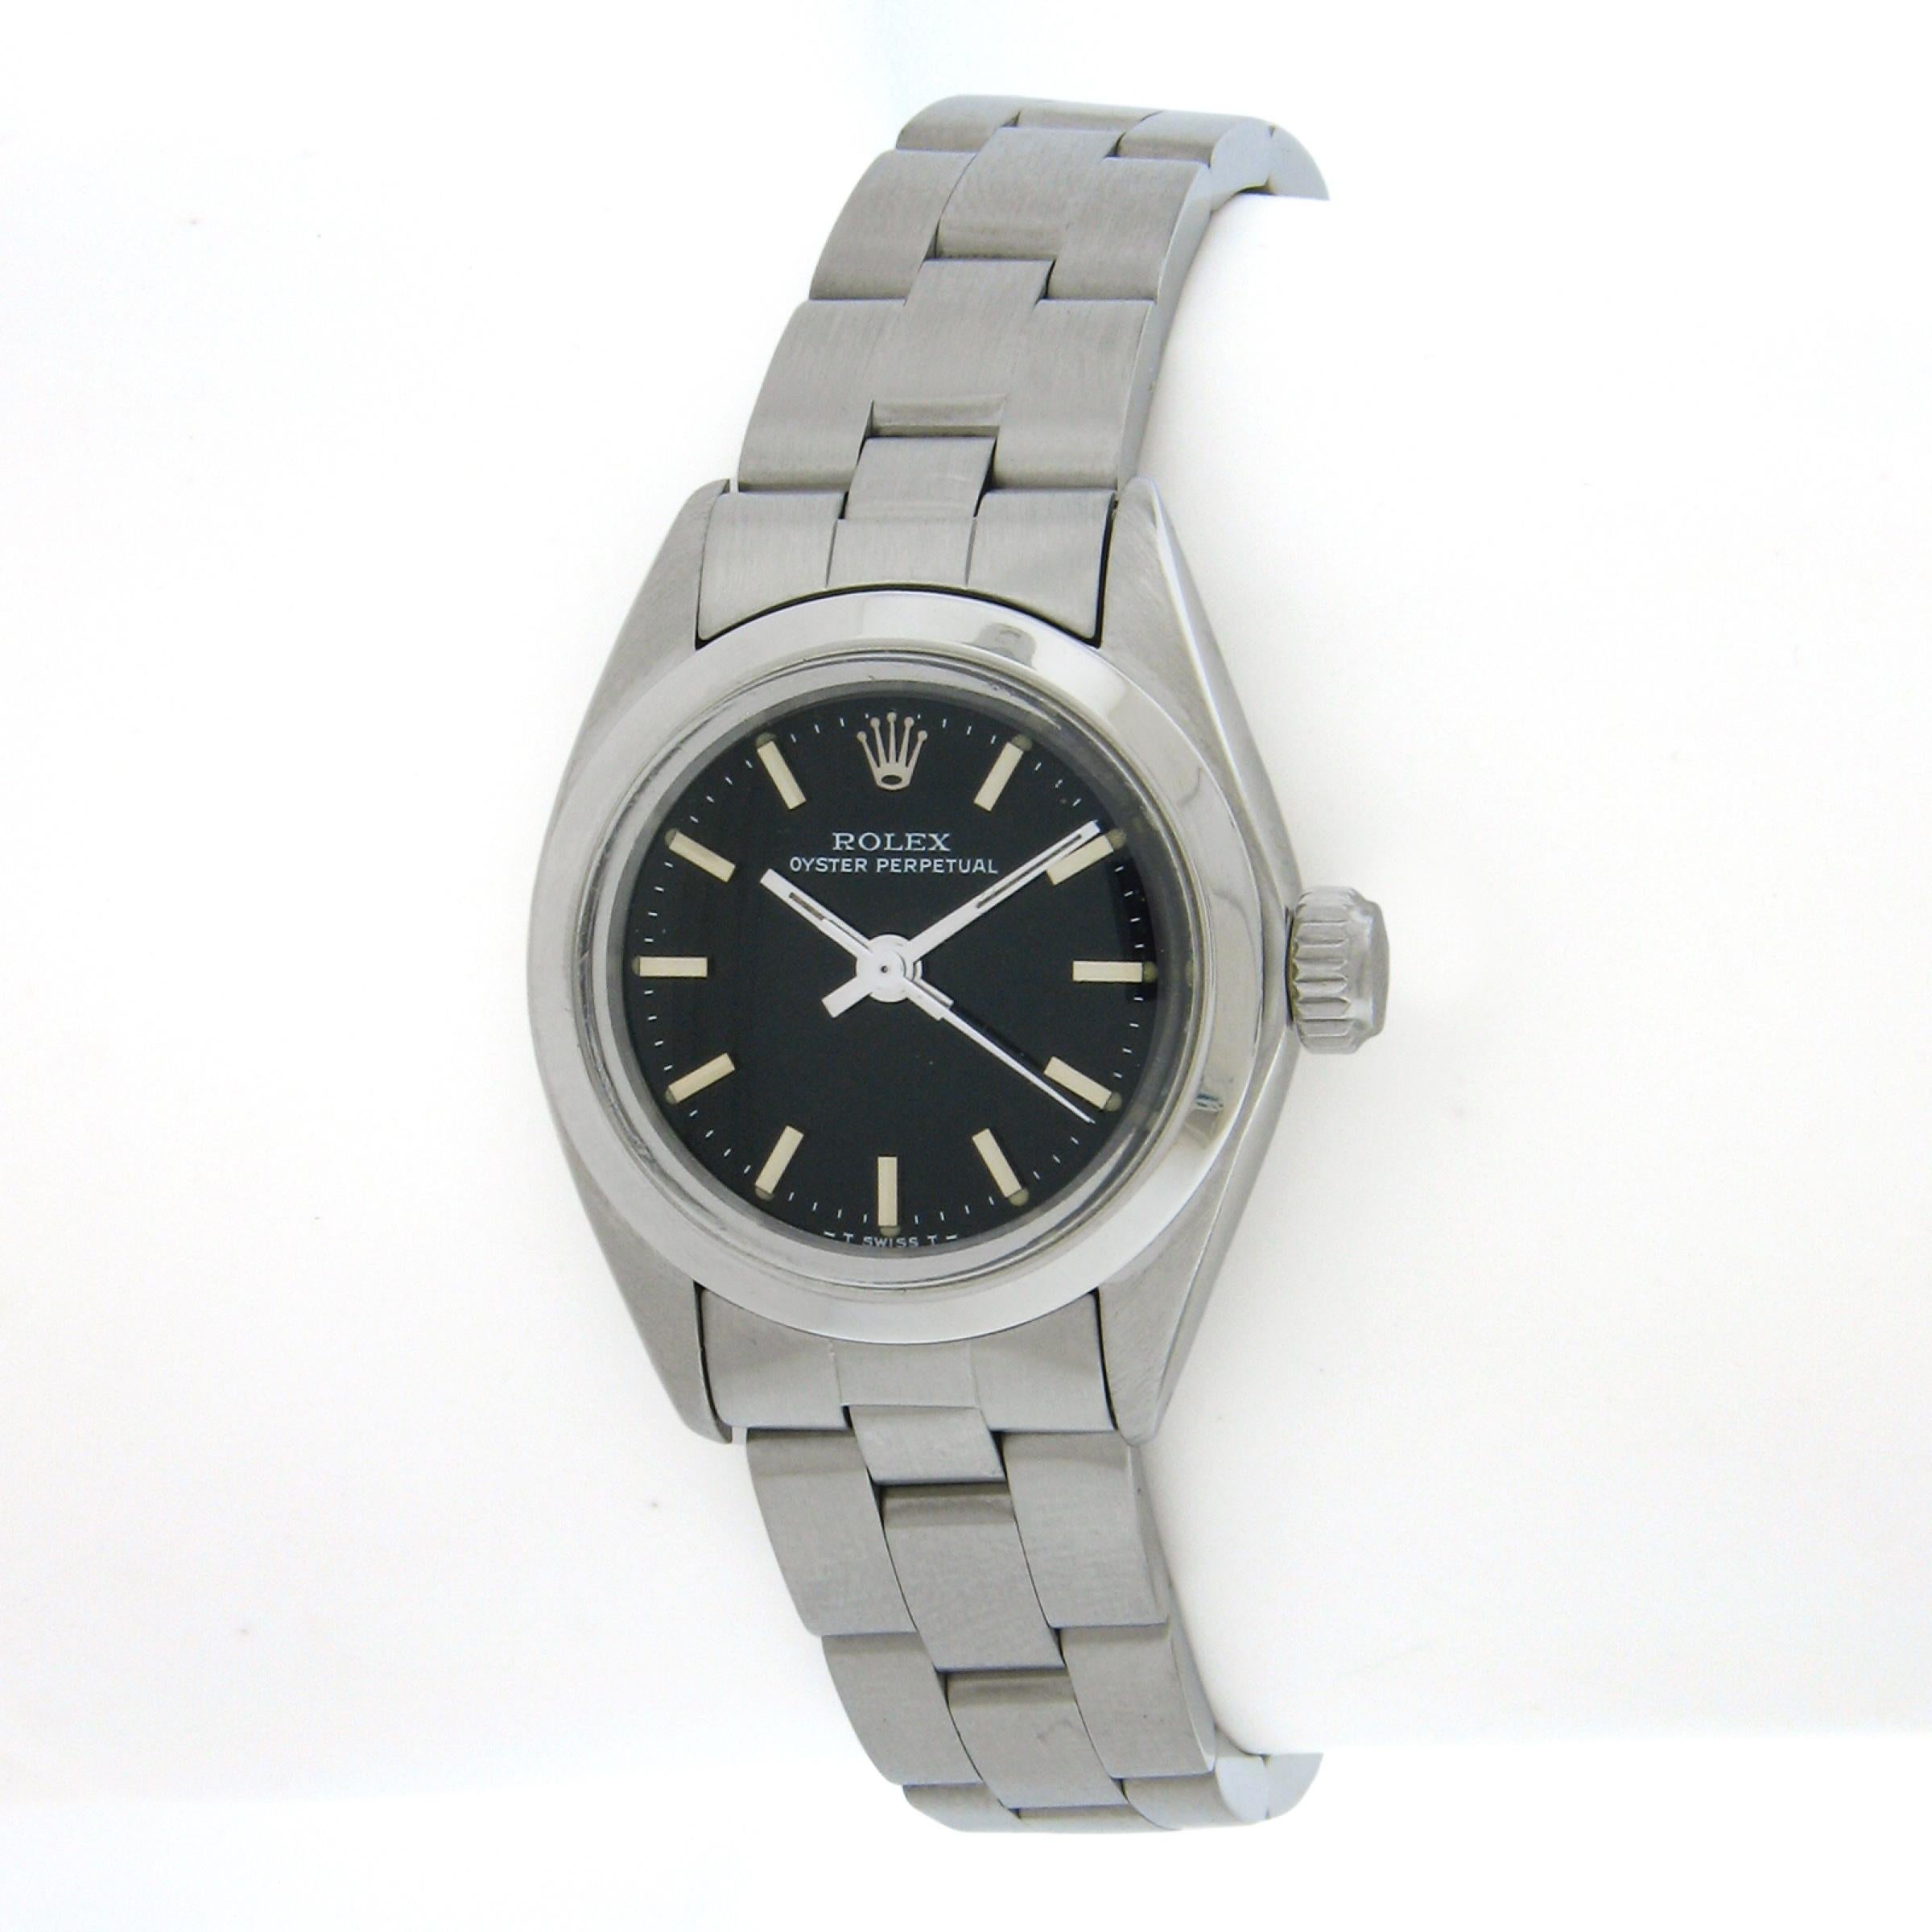 Diese wunderschöne Unisex Rolex Datejust ist von 1981 und hat die Referenz 6718. Das automatische Uhrwerk mit Automatikaufzug läuft reibungslos und hält die Zeit genau ein. Die Uhr befindet sich in einem ausgezeichneten Gesamtzustand und das